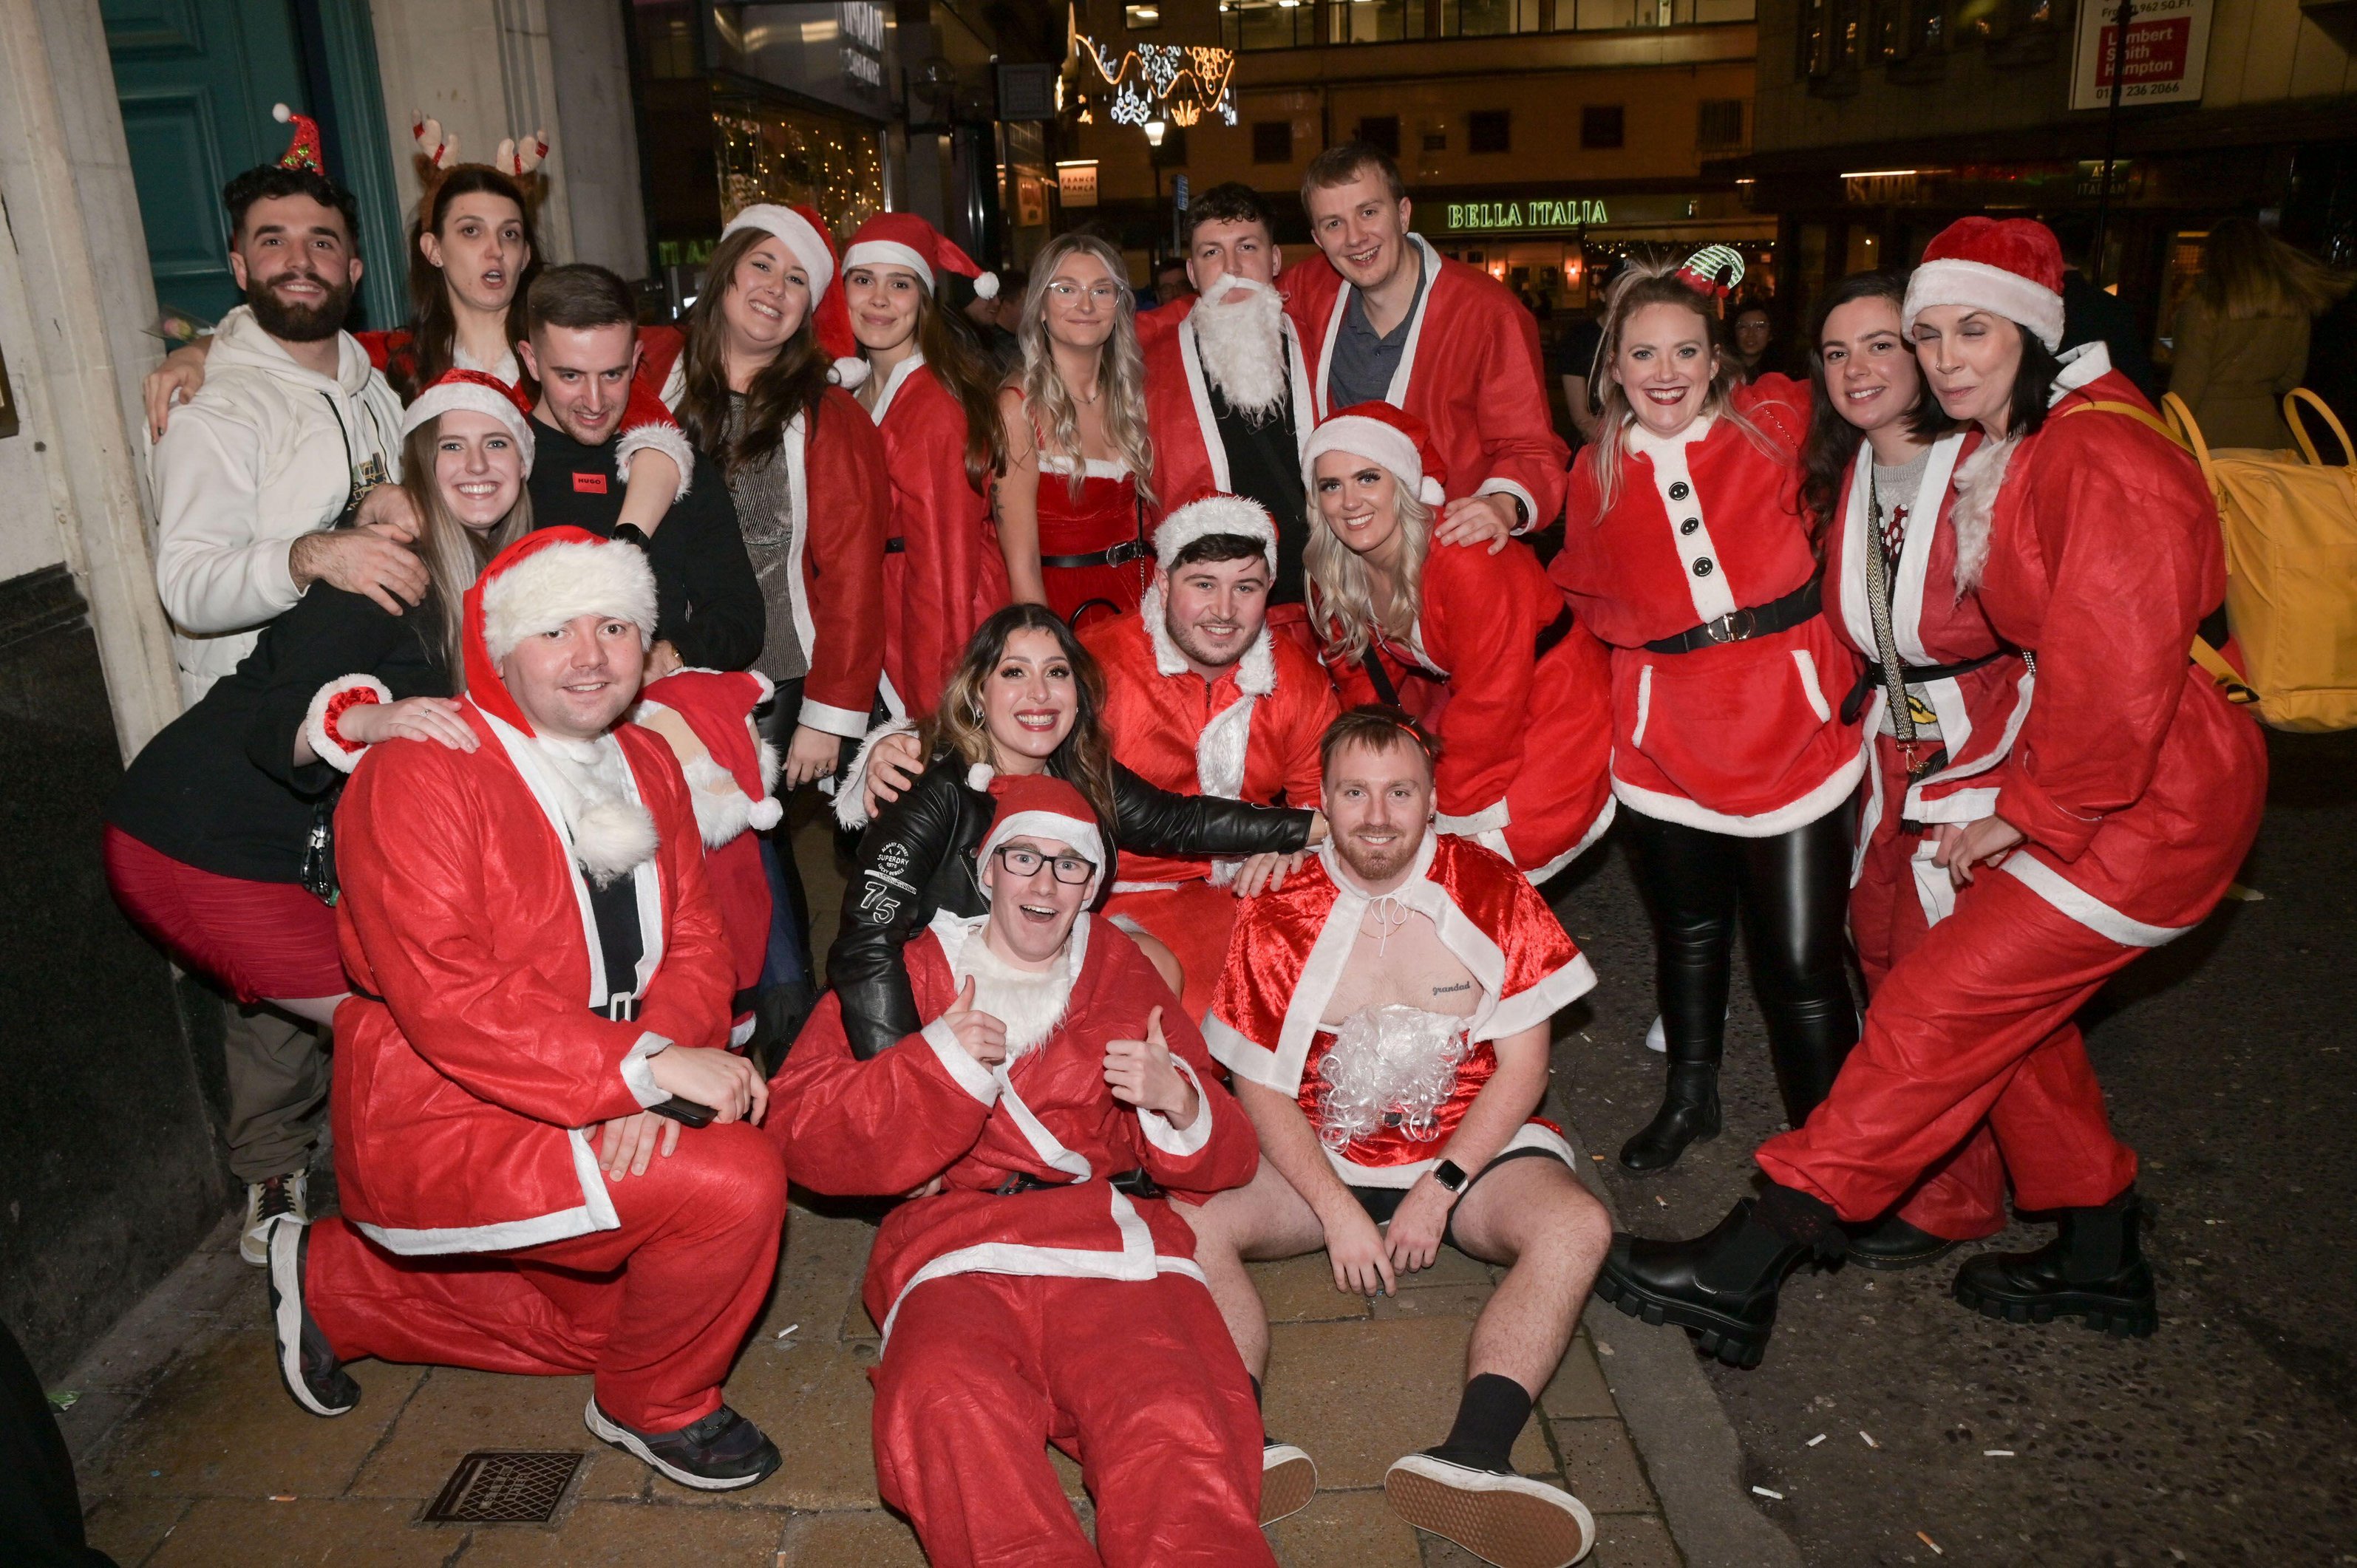 Partygänger in Birmingham gehen in voller Weihnachtsmann-Verkleidung auf die Straße